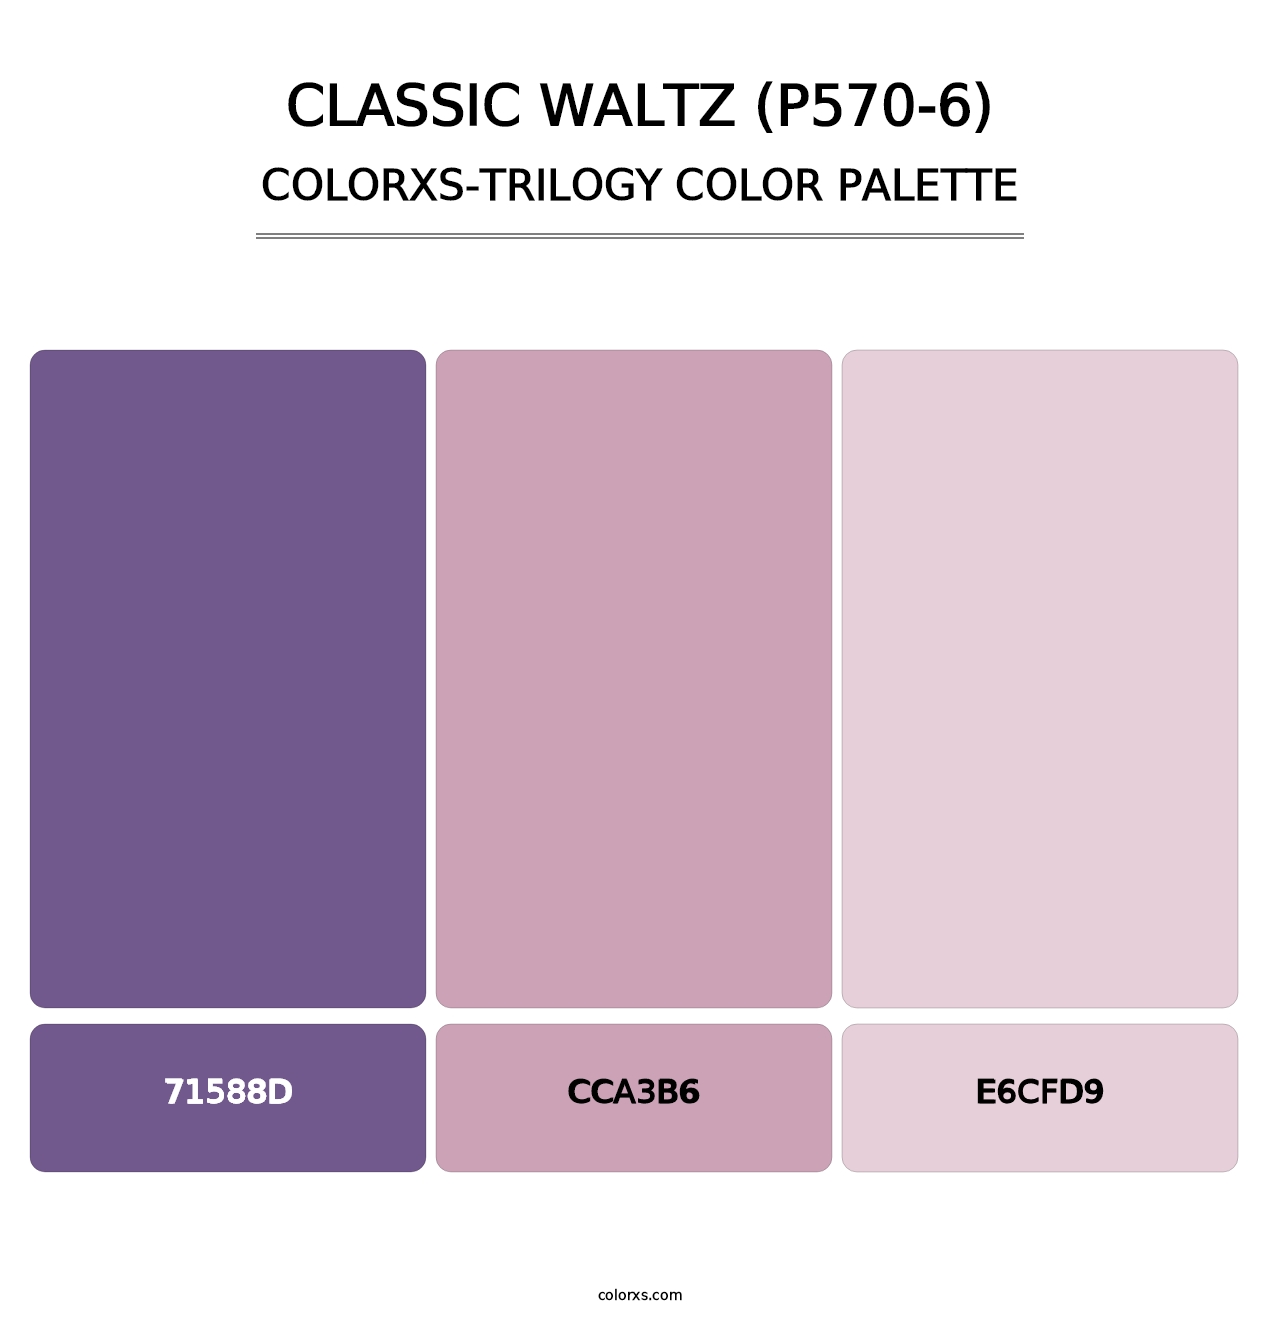 Classic Waltz (P570-6) - Colorxs Trilogy Palette